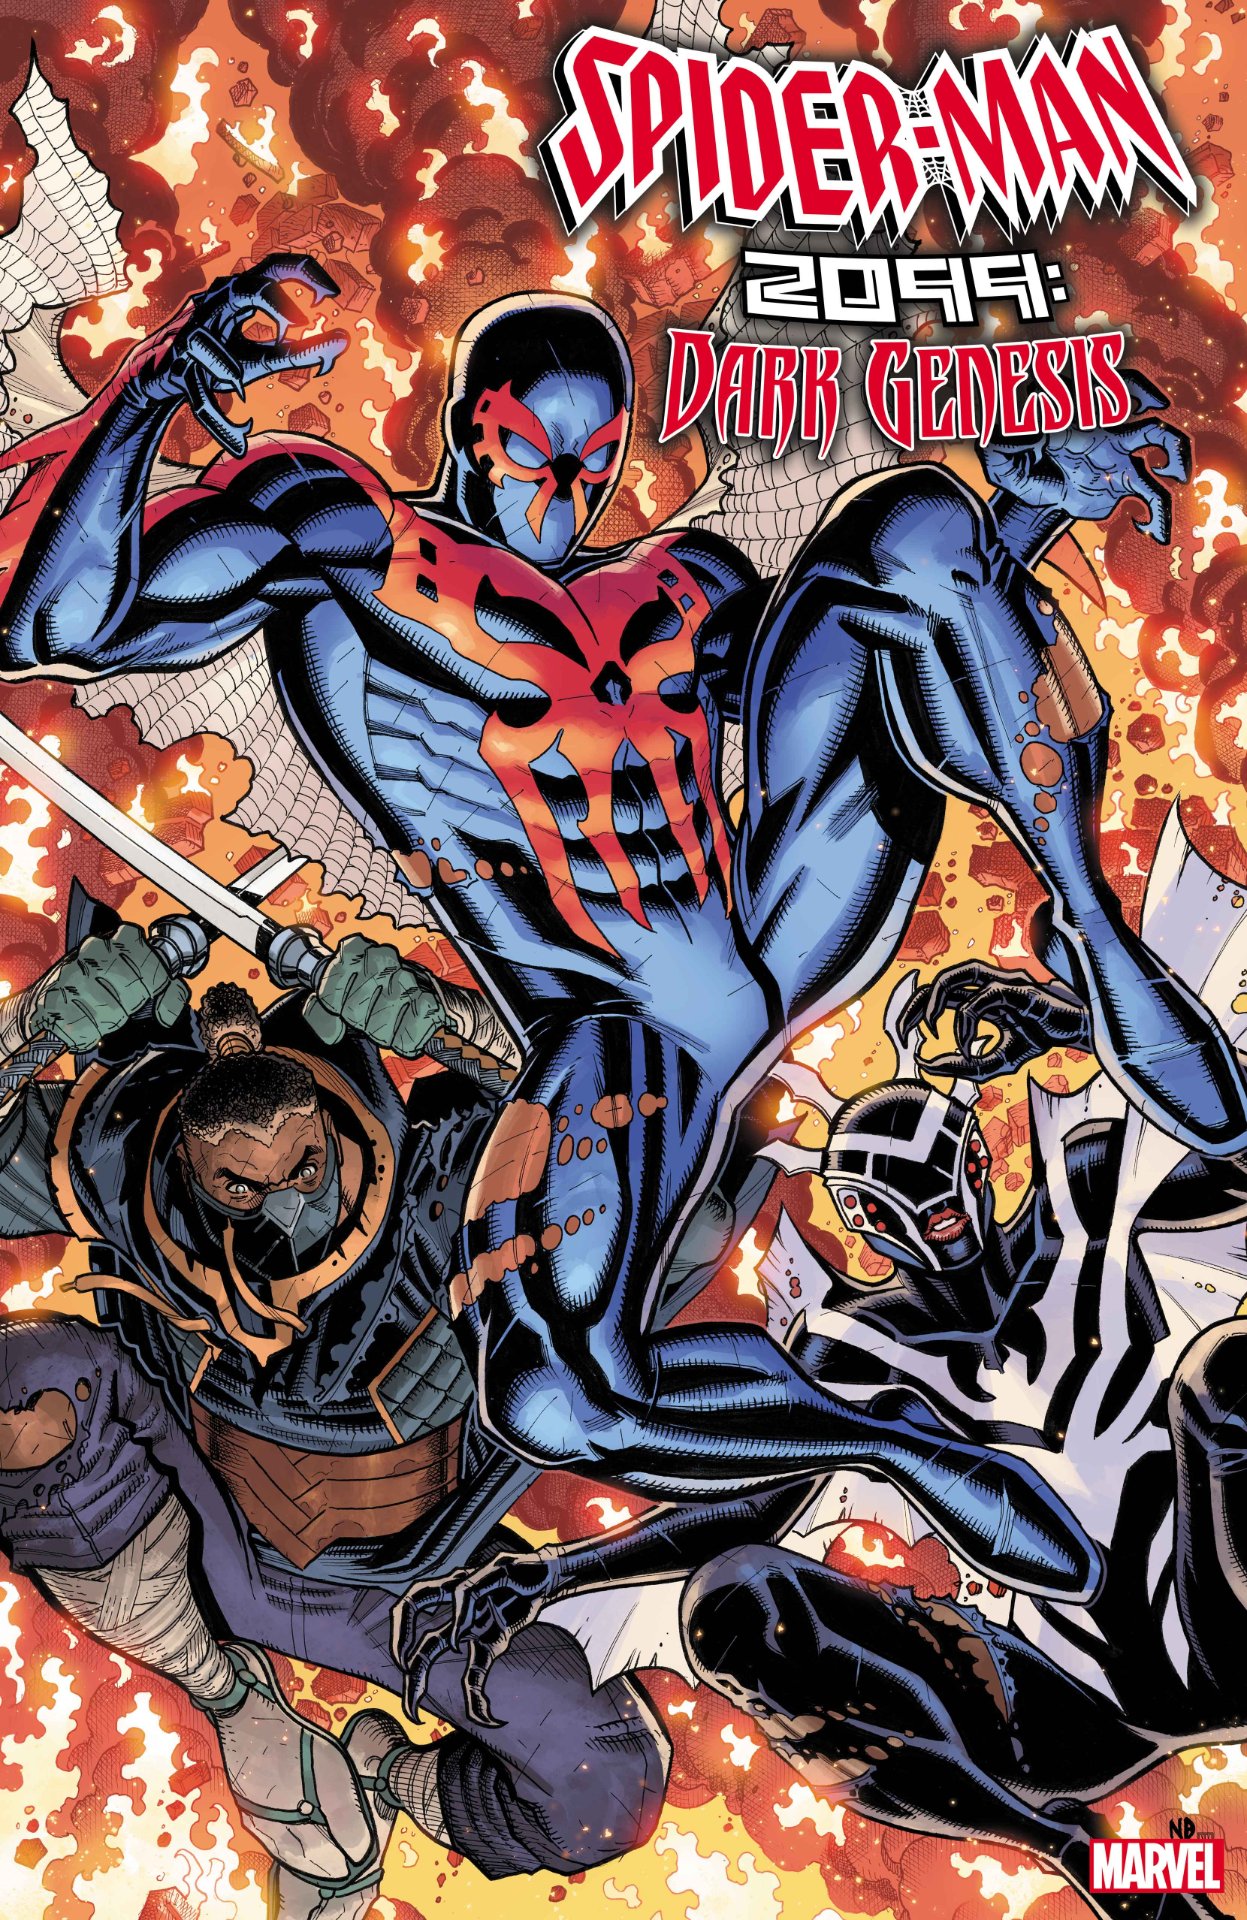 Spider-Man 2099: Darkish Genesis #2 duvet